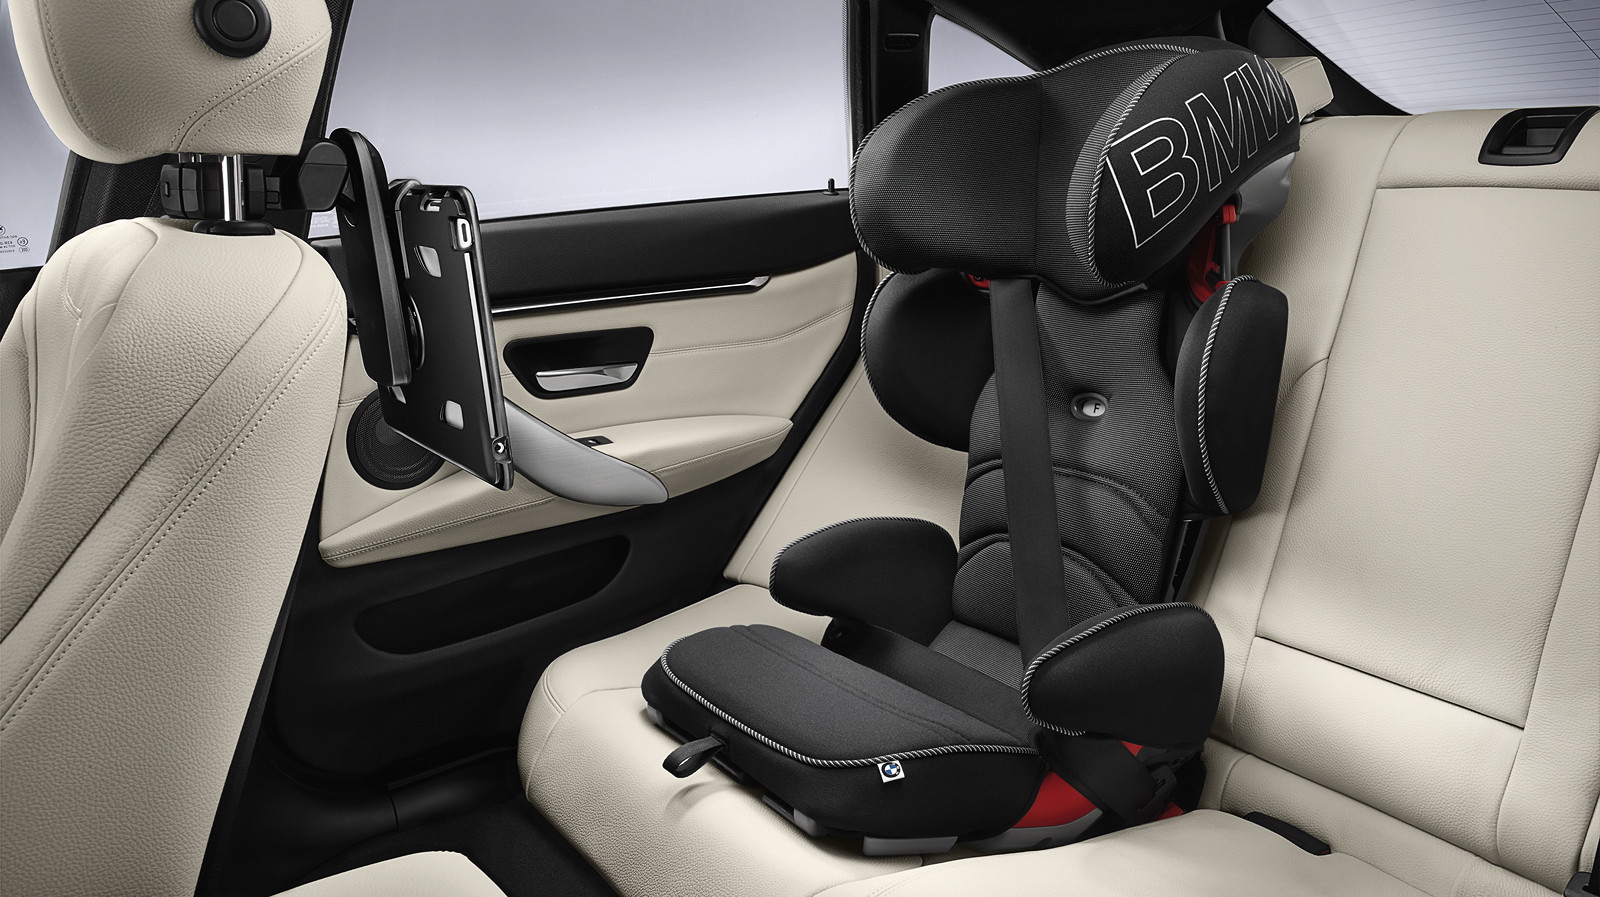 Foto: BMW Junior Seat 2/3 schwarz, Travel u. Comfort System